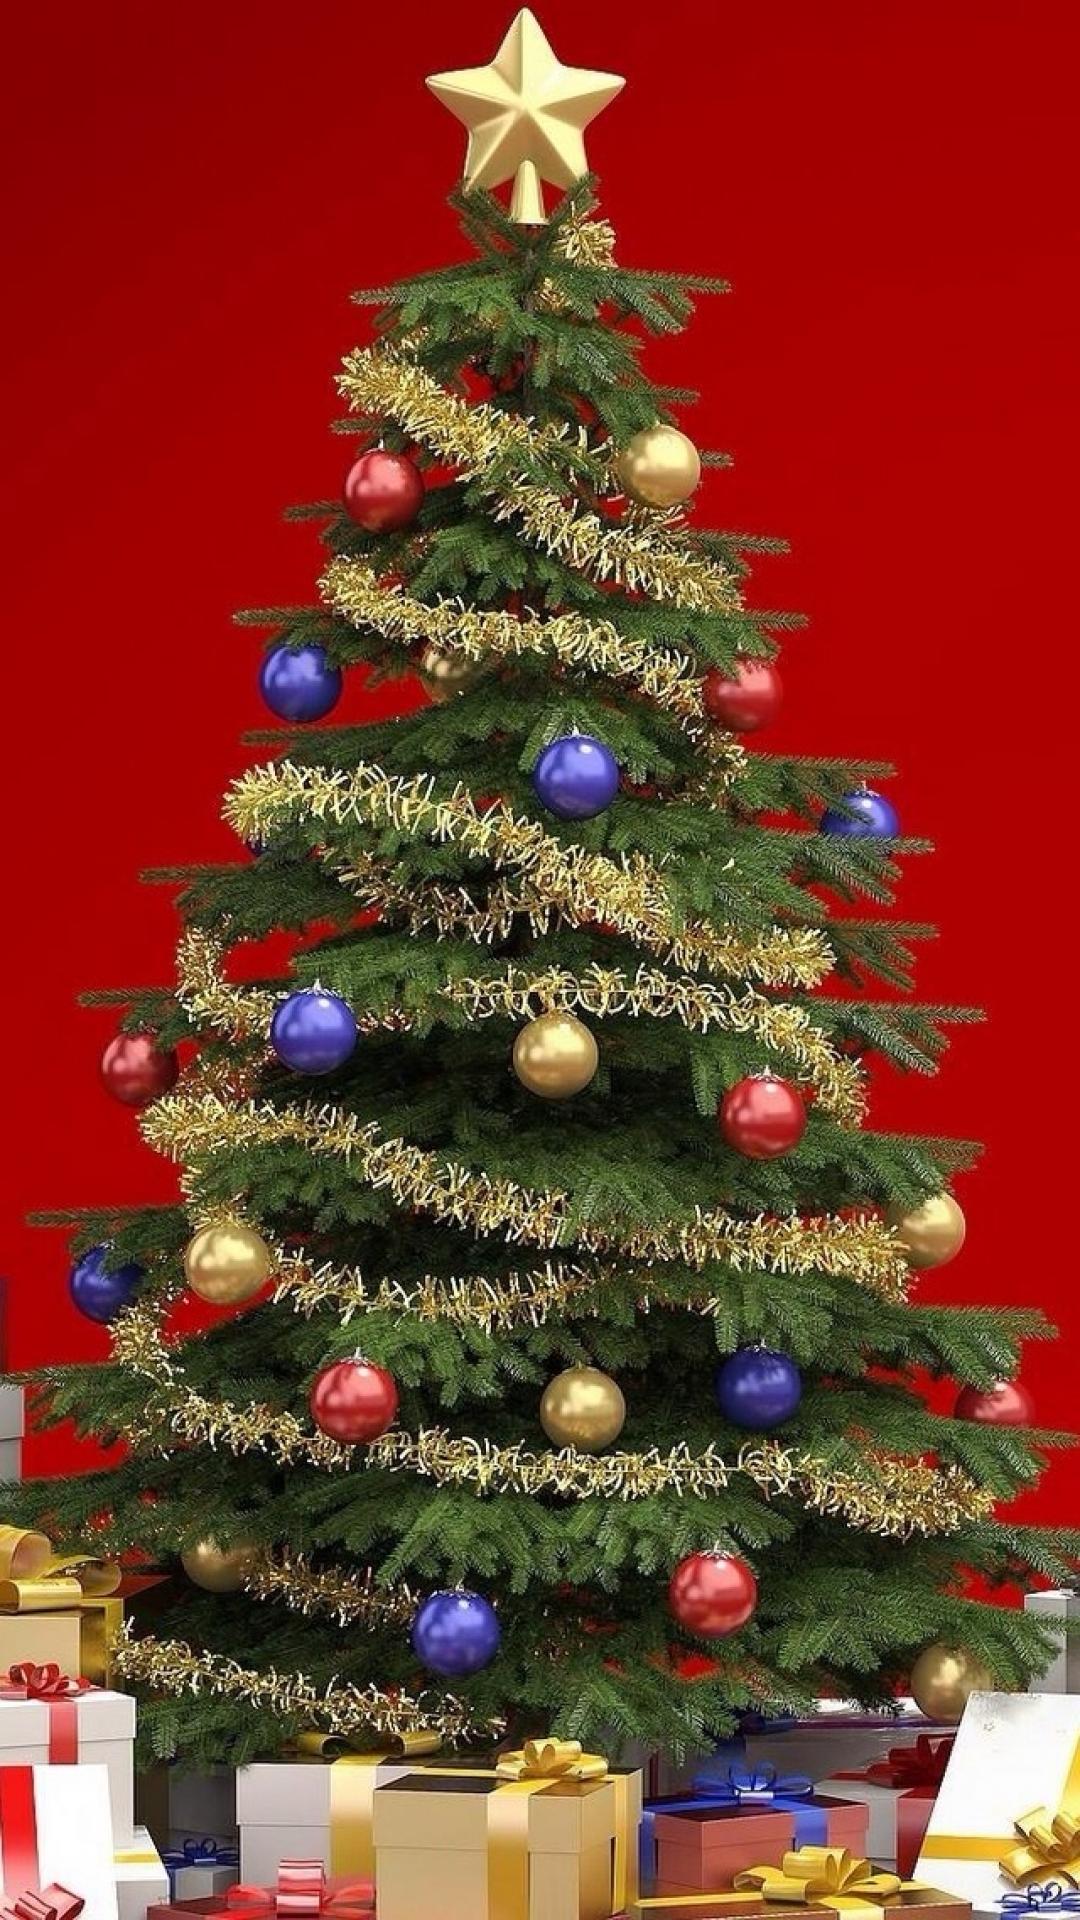 15 hình nền merry christmas đẹp lung linh cho iphone - Hình 7